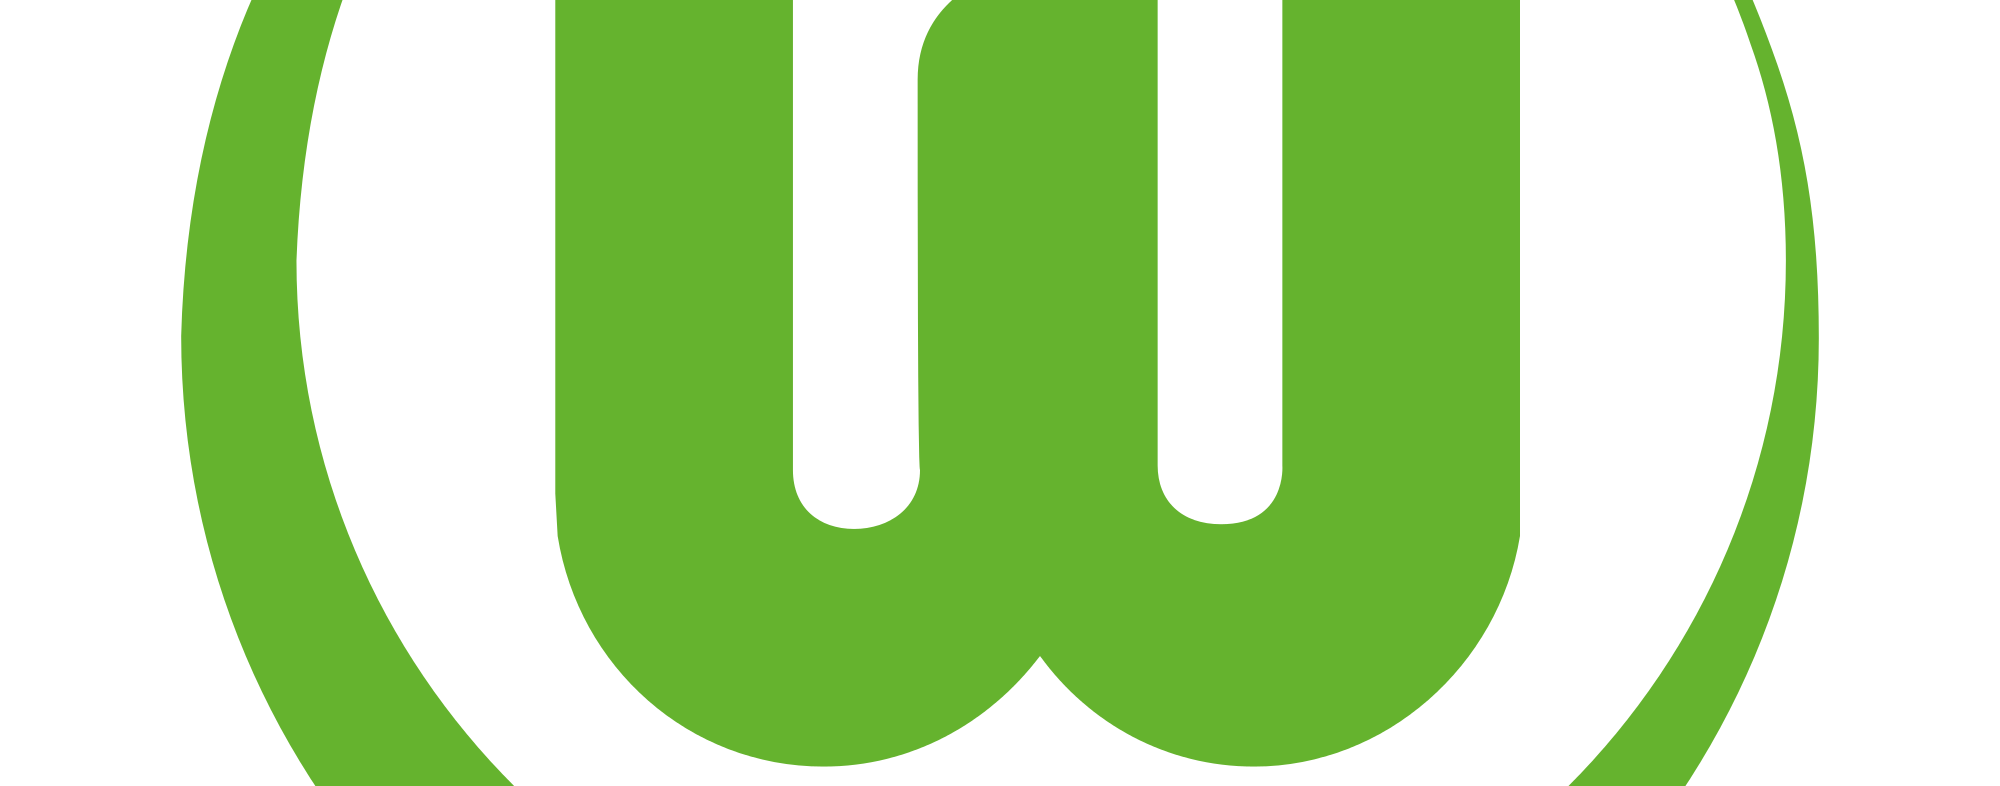 Vfl Wolfsburg Live Stream kostenlos und legal anschauen